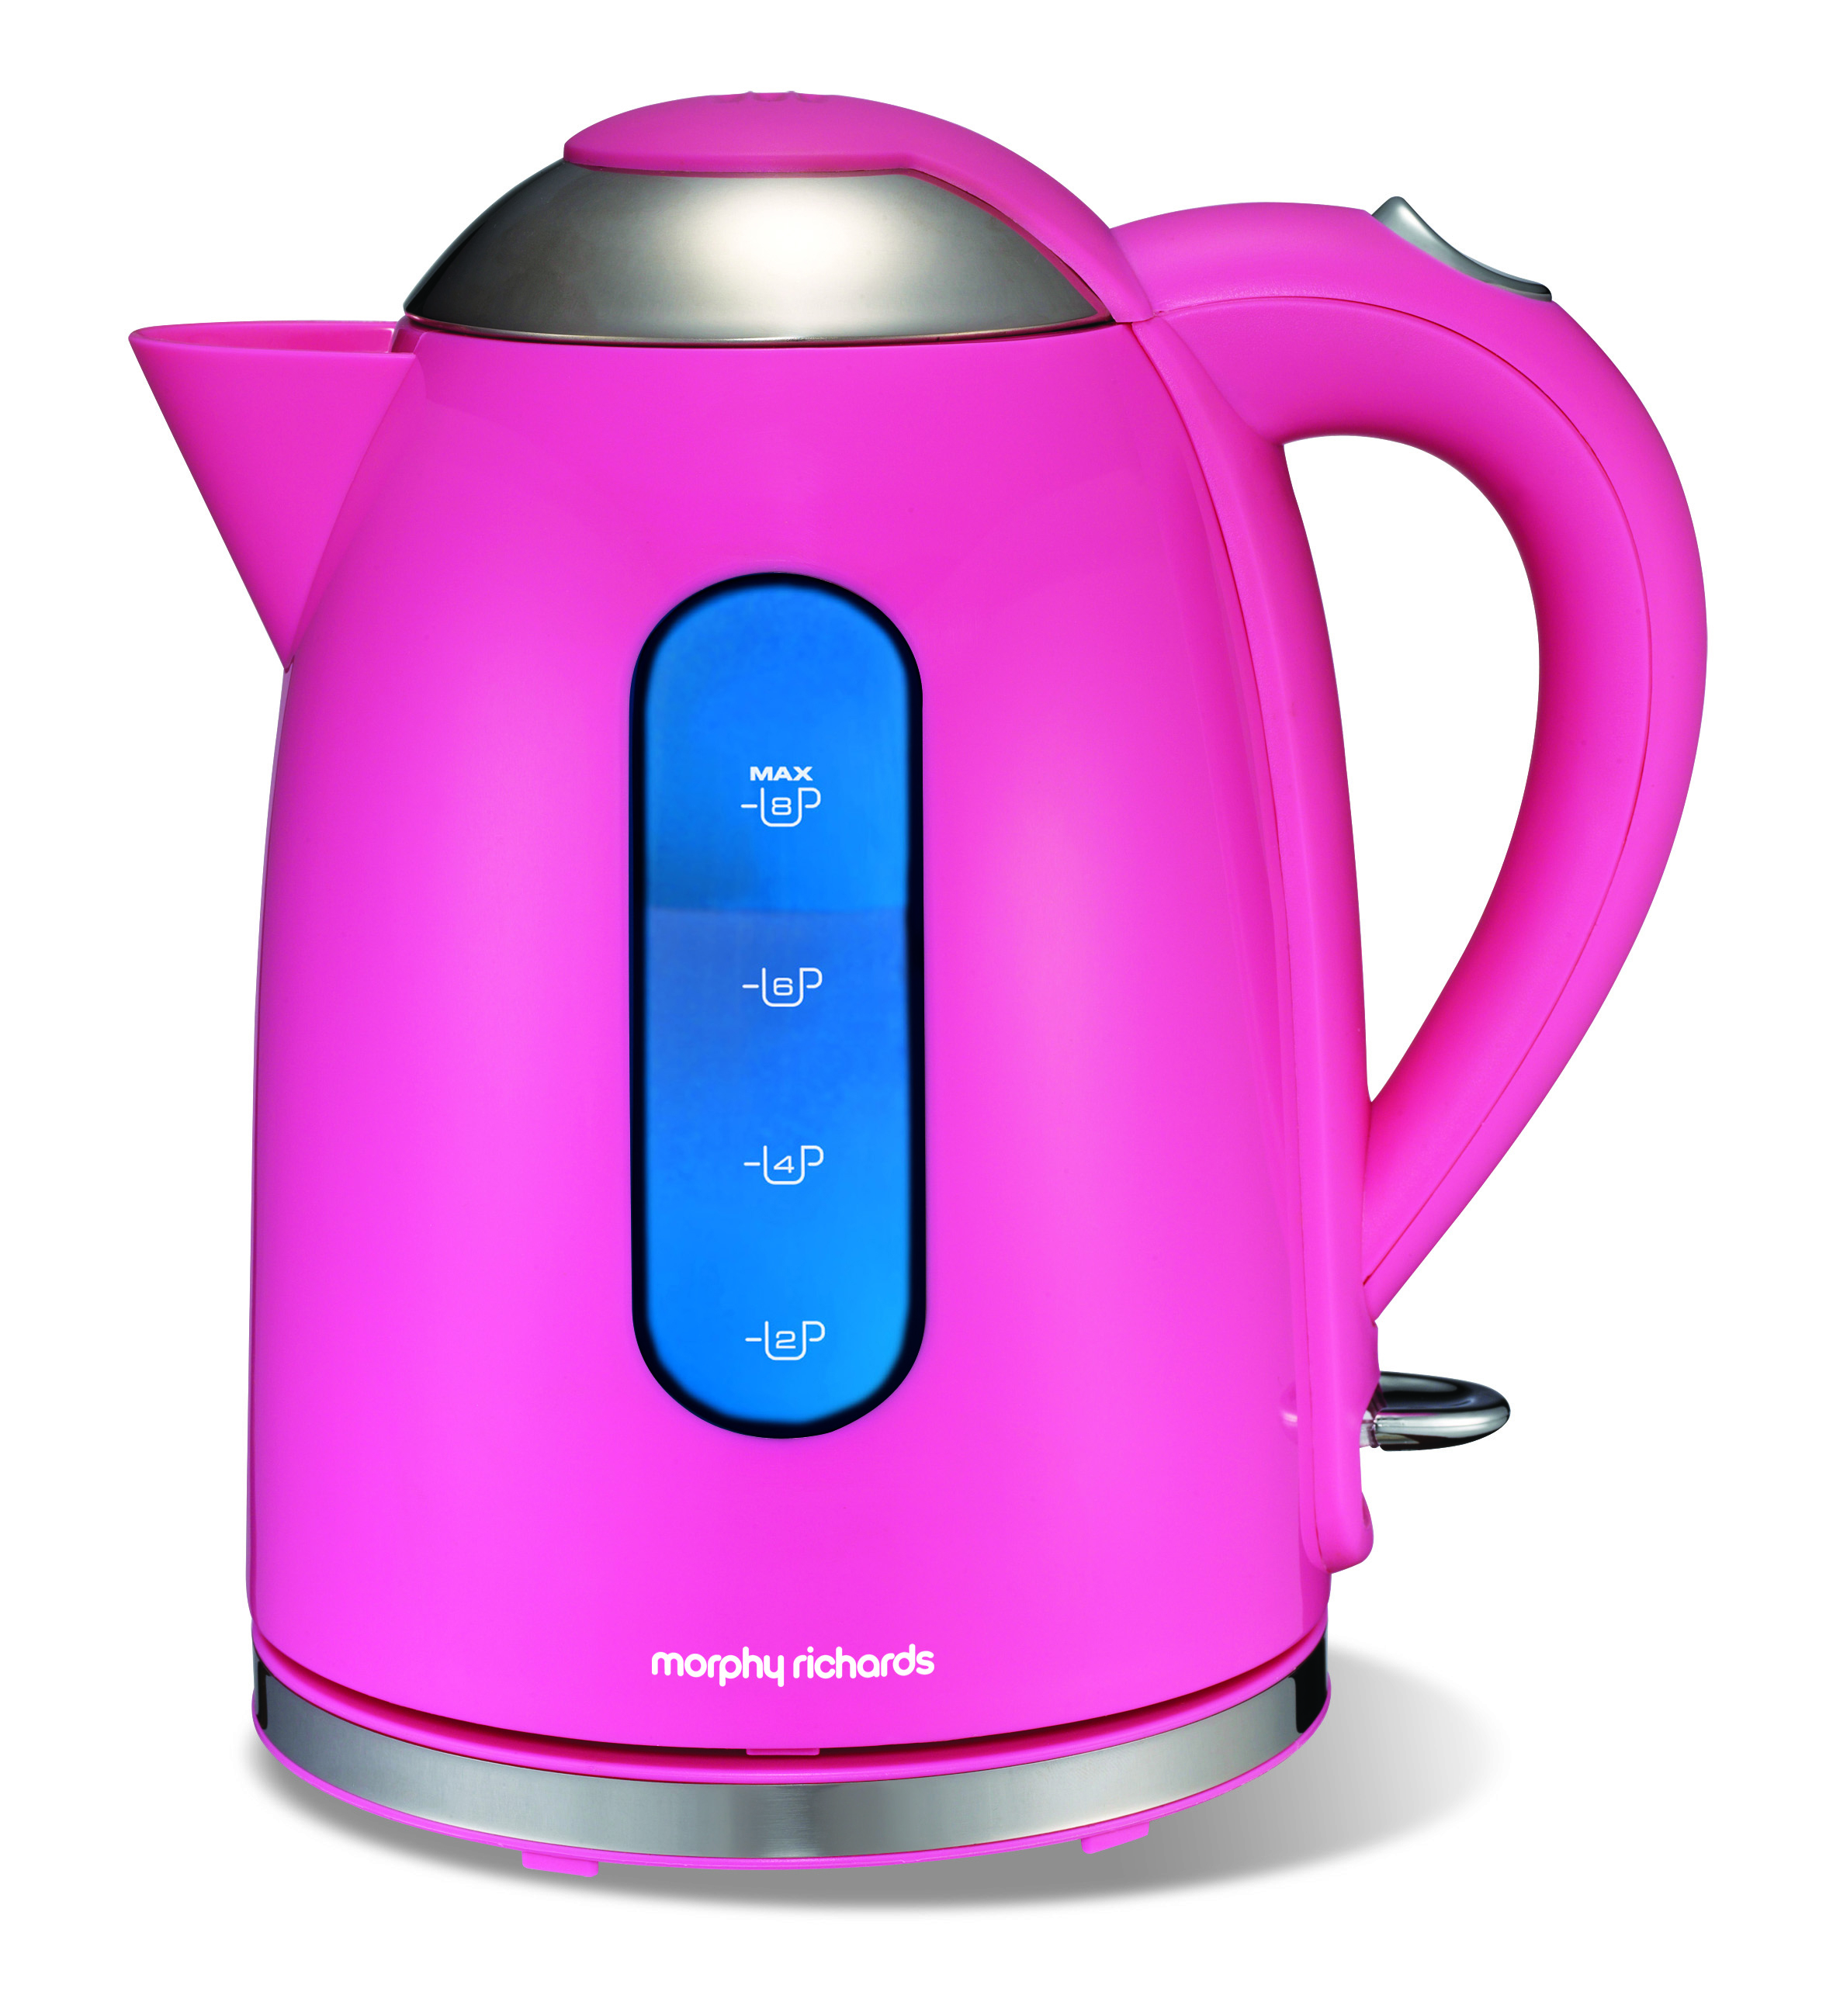 Pink Tea Kettle - Foter